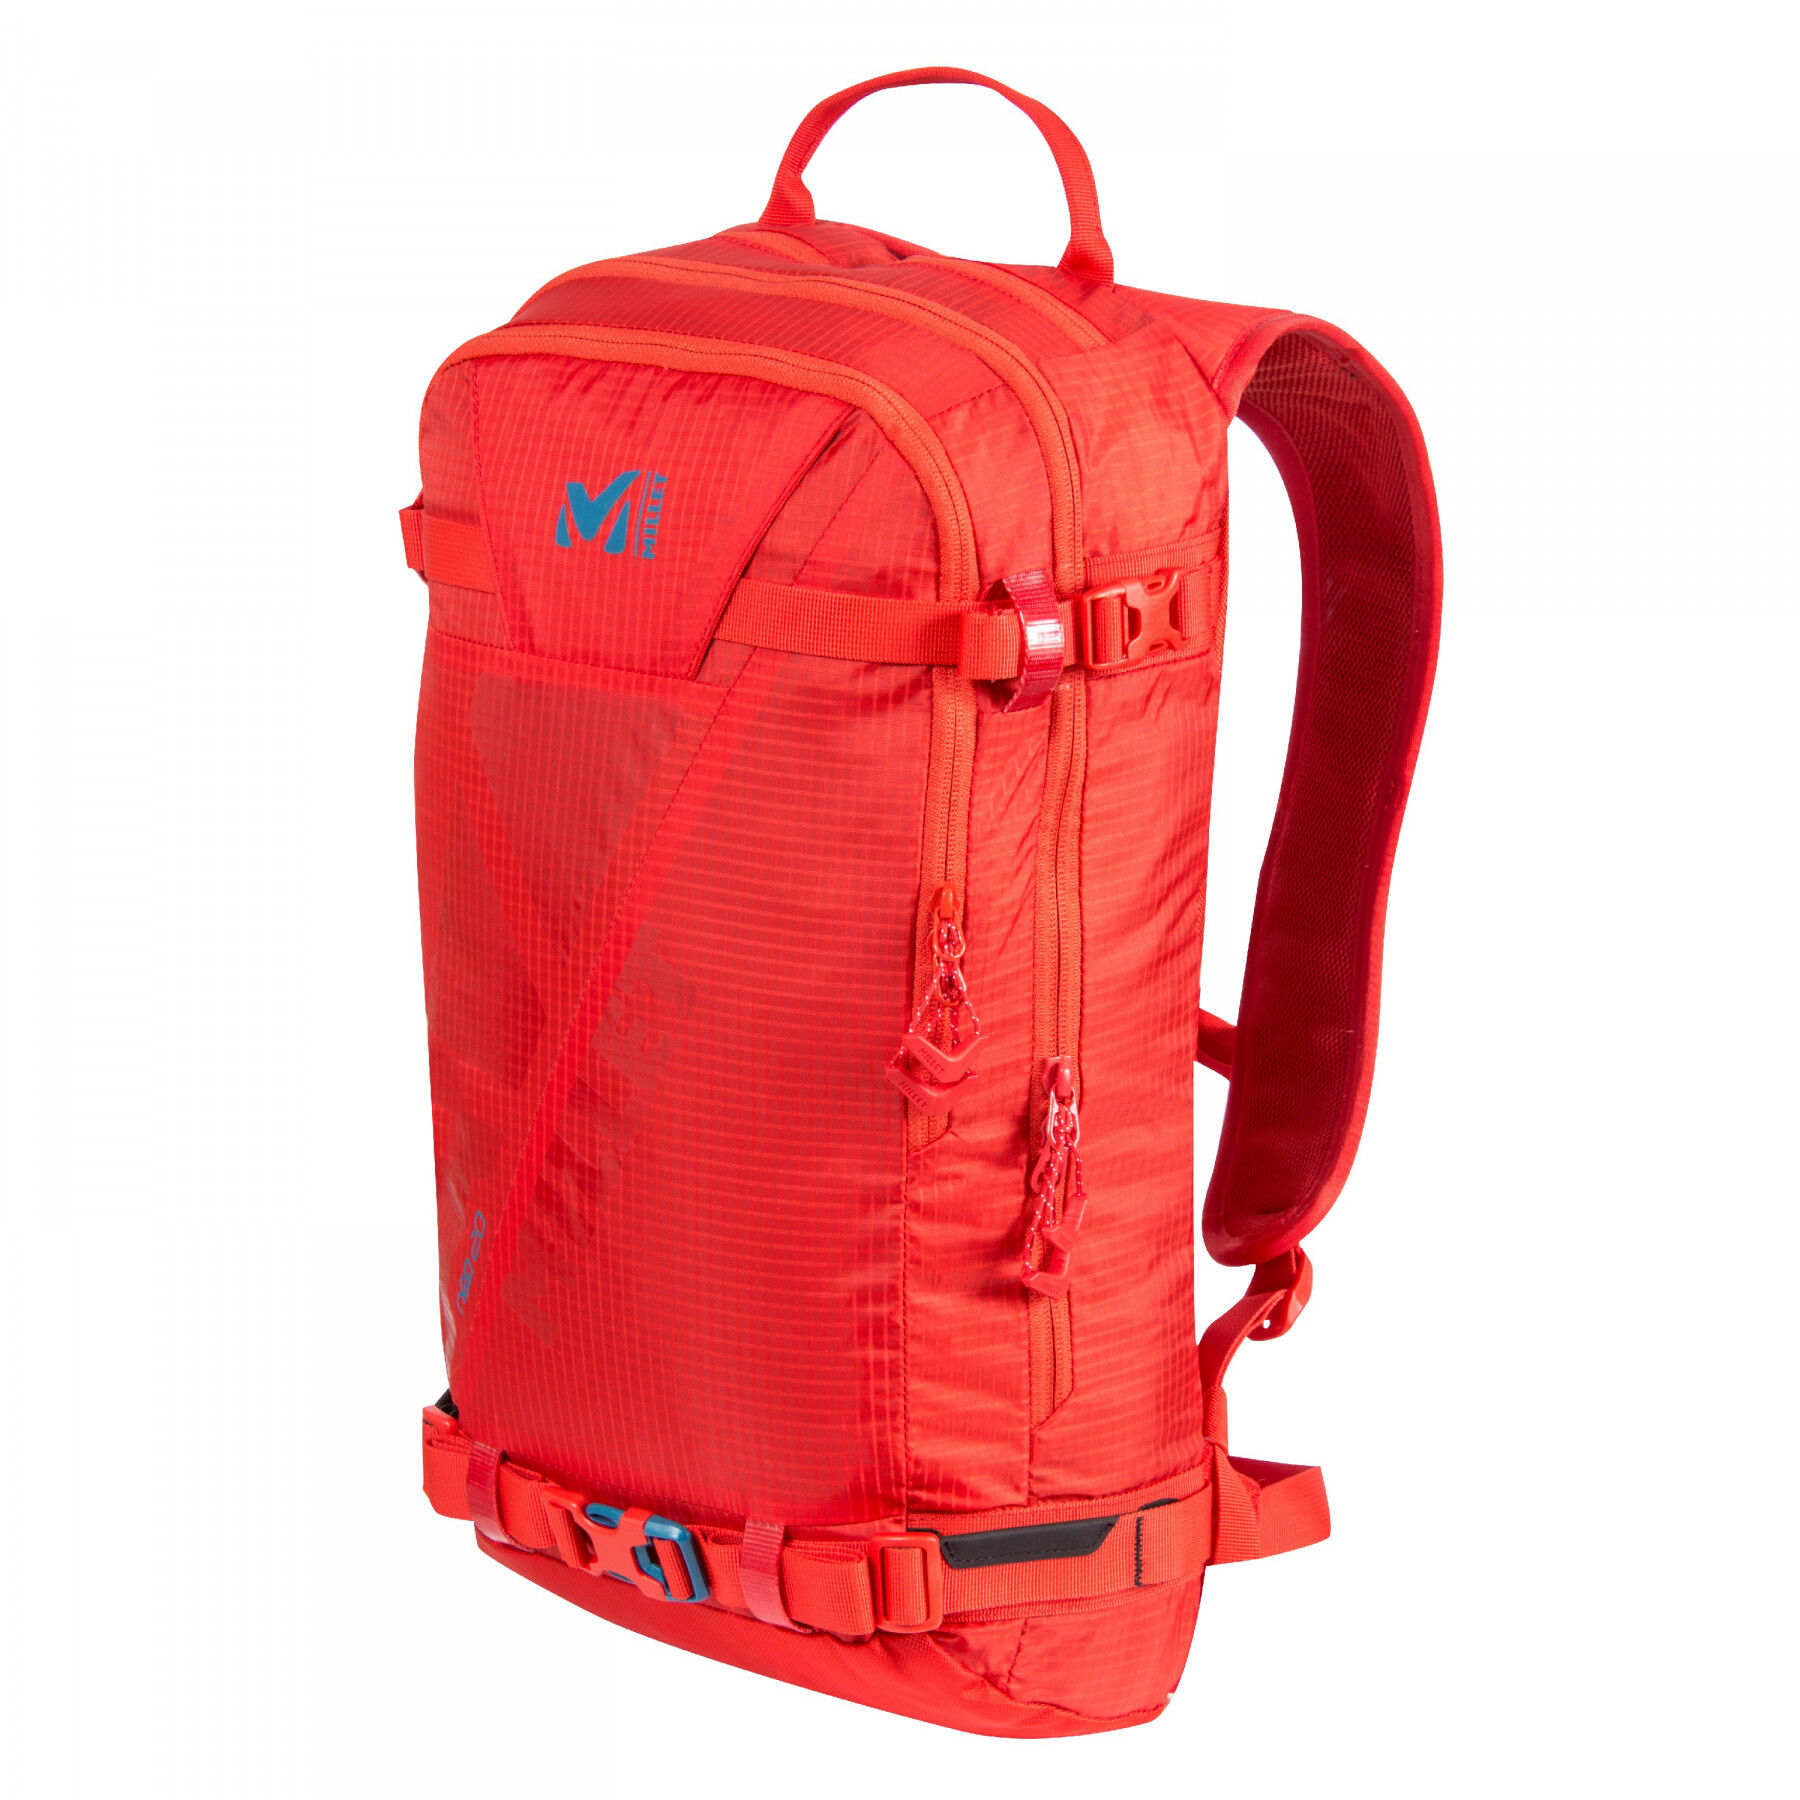 Millet Neo 20 - Ski backpack